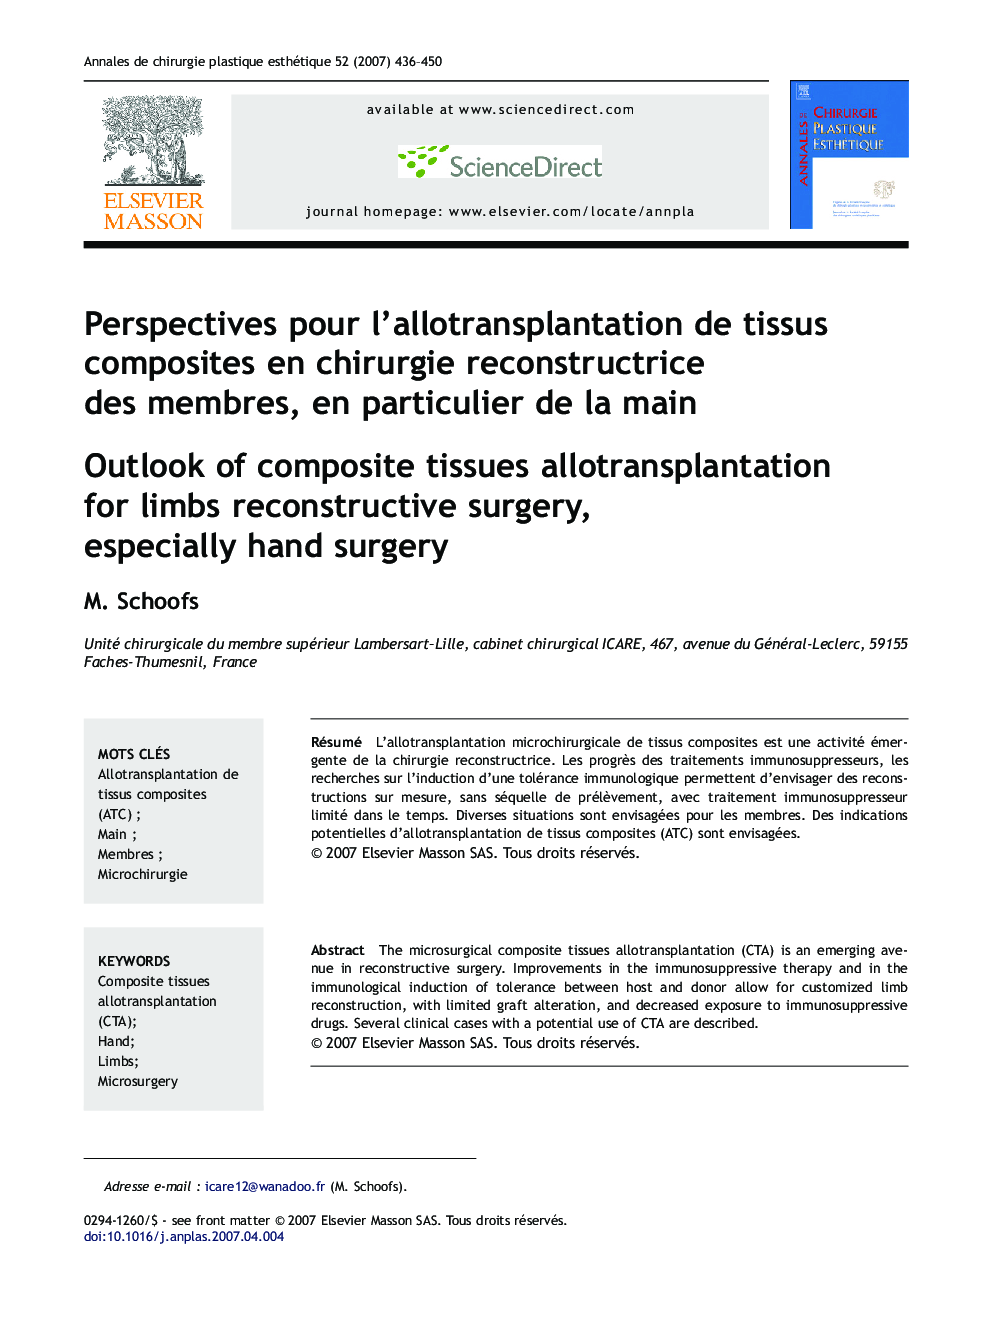 Perspectives pour l'allotransplantation de tissus composites en chirurgie reconstructrice des membres, en particulier de la main